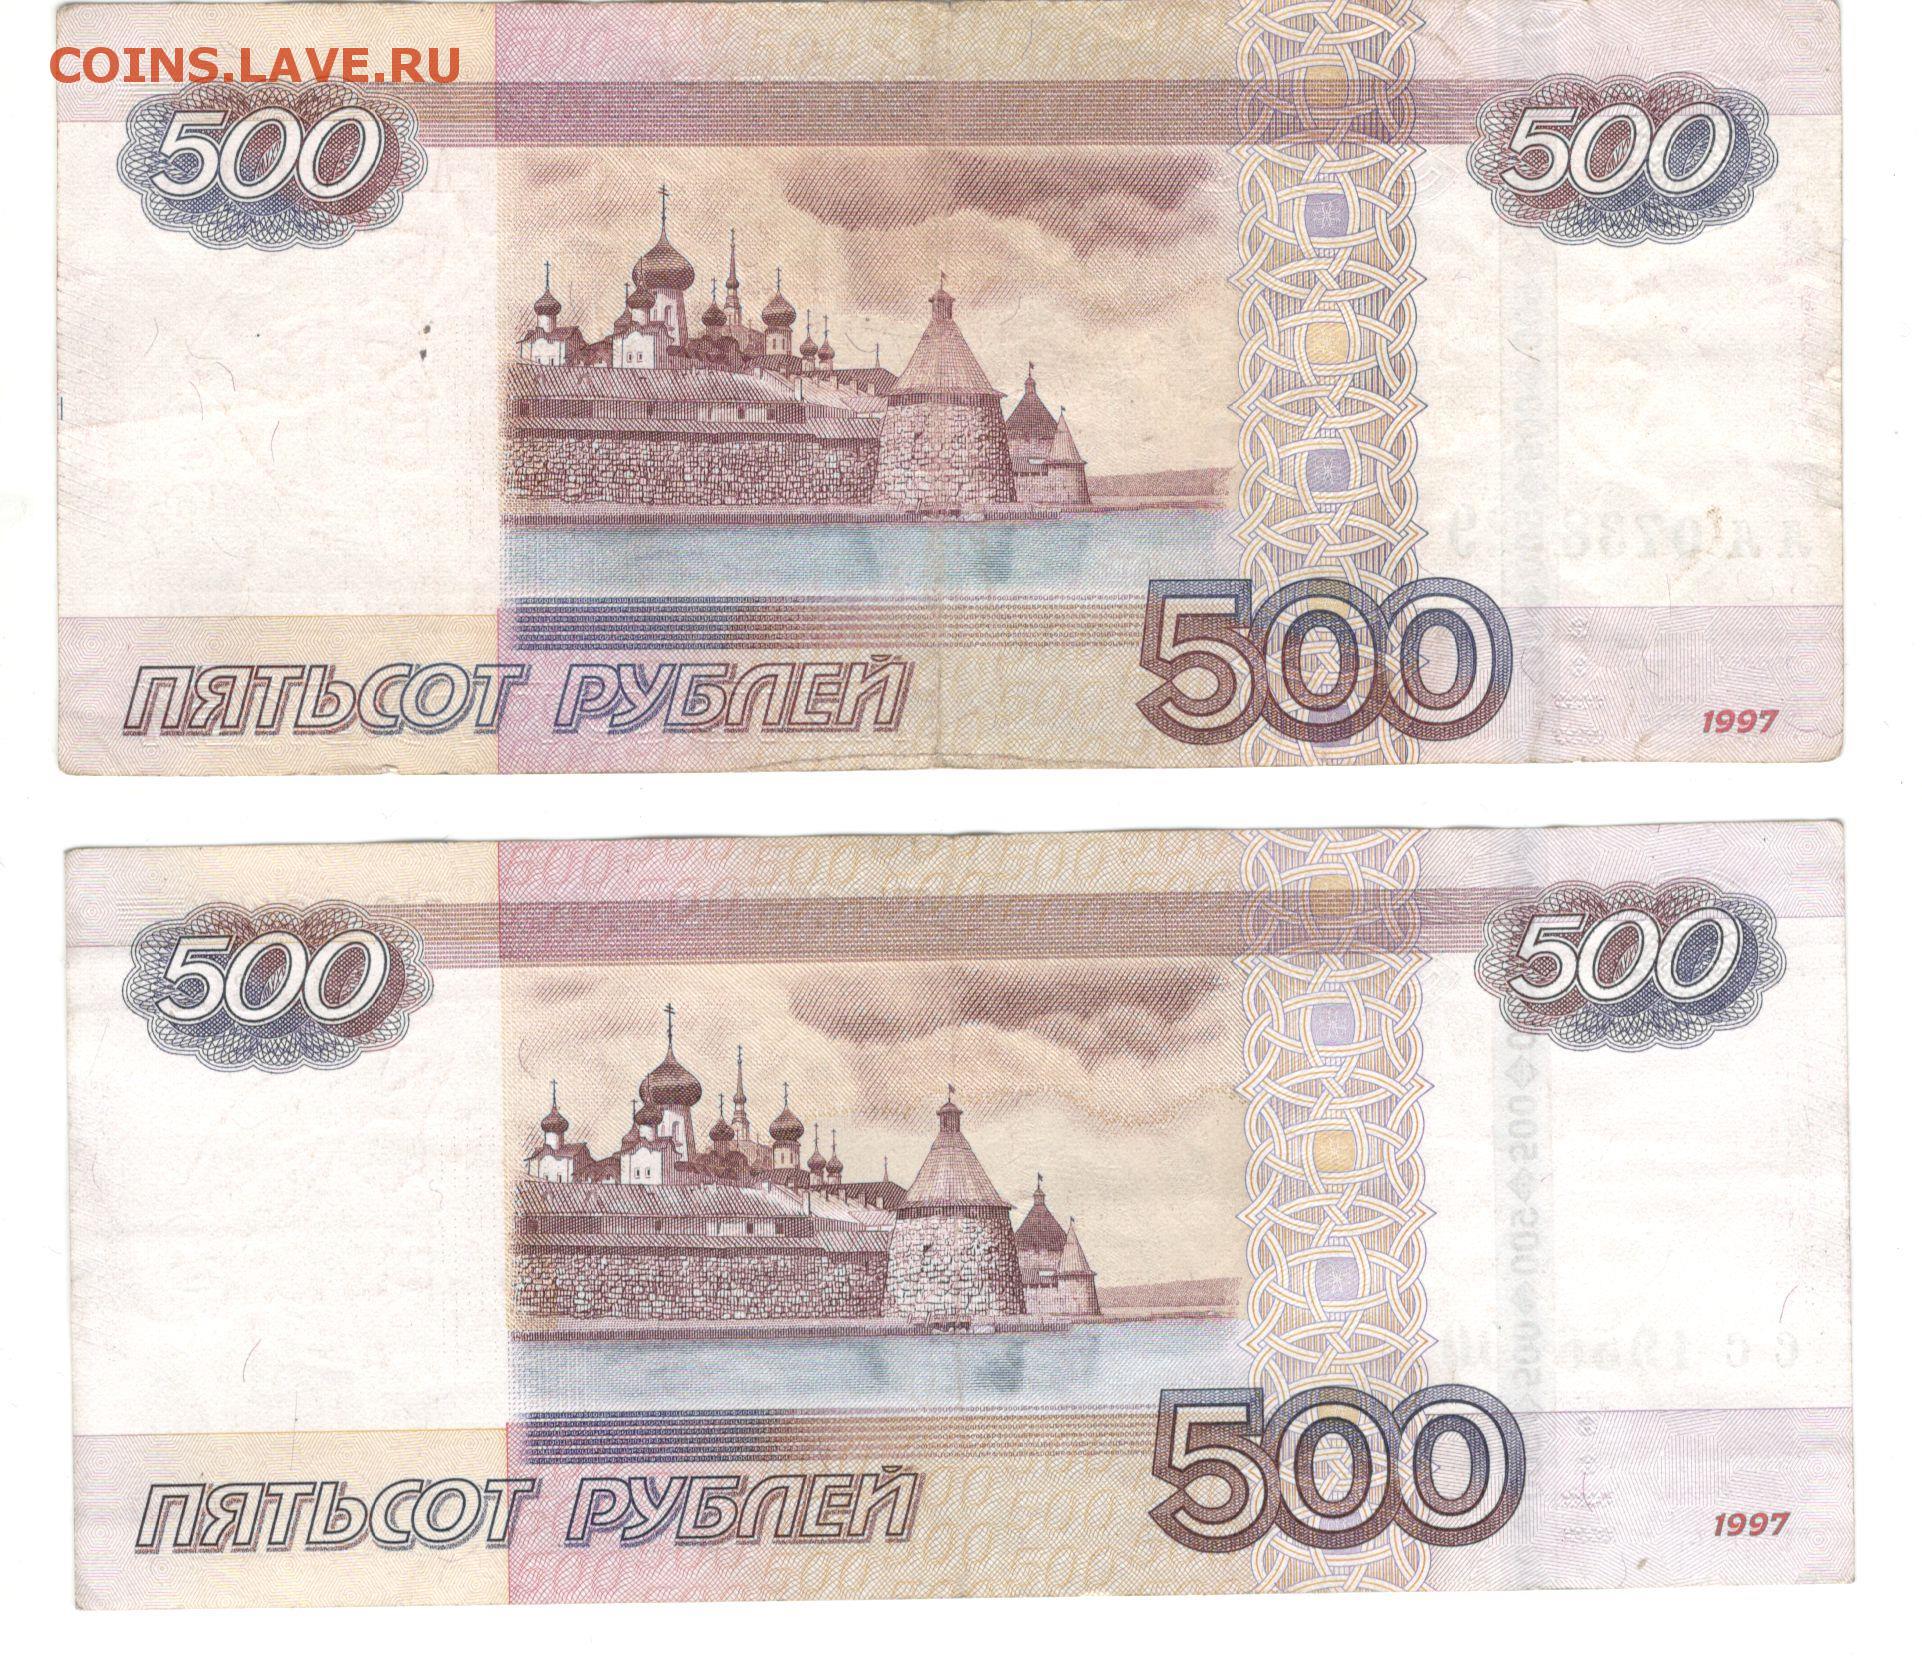 В 1997 году словами. Купюры 1997 года Россия до деноминации. Деноминация рубля в России в 1998. Деньги России до деноминации 1998 года. Купюры до деноминации 1998.